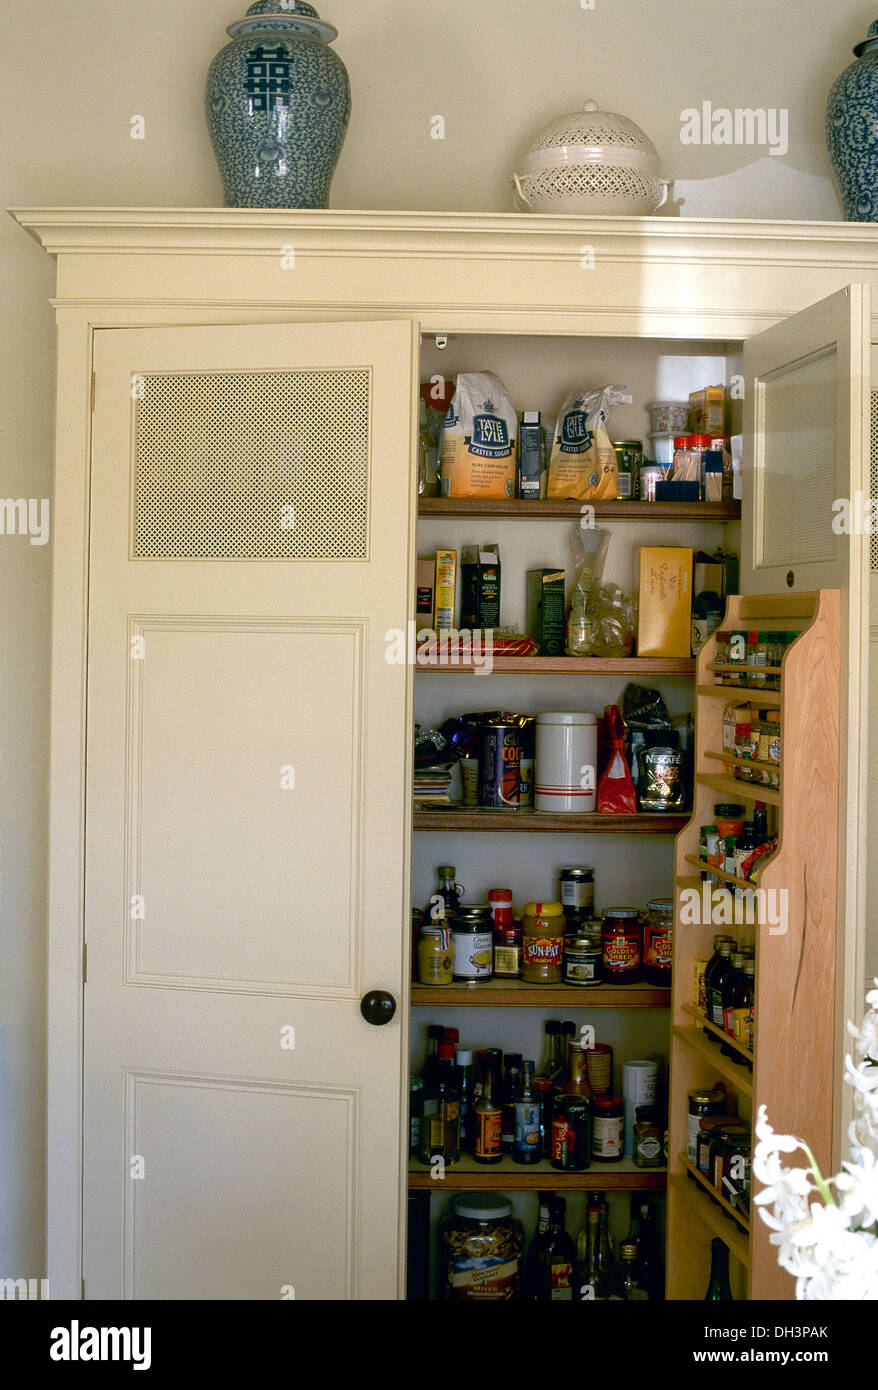 Erbaut im Vorratsschrank Schrank mit fester Tür Regale und Flaschen und  Gläser von Lebensmitteln Stockfotografie - Alamy